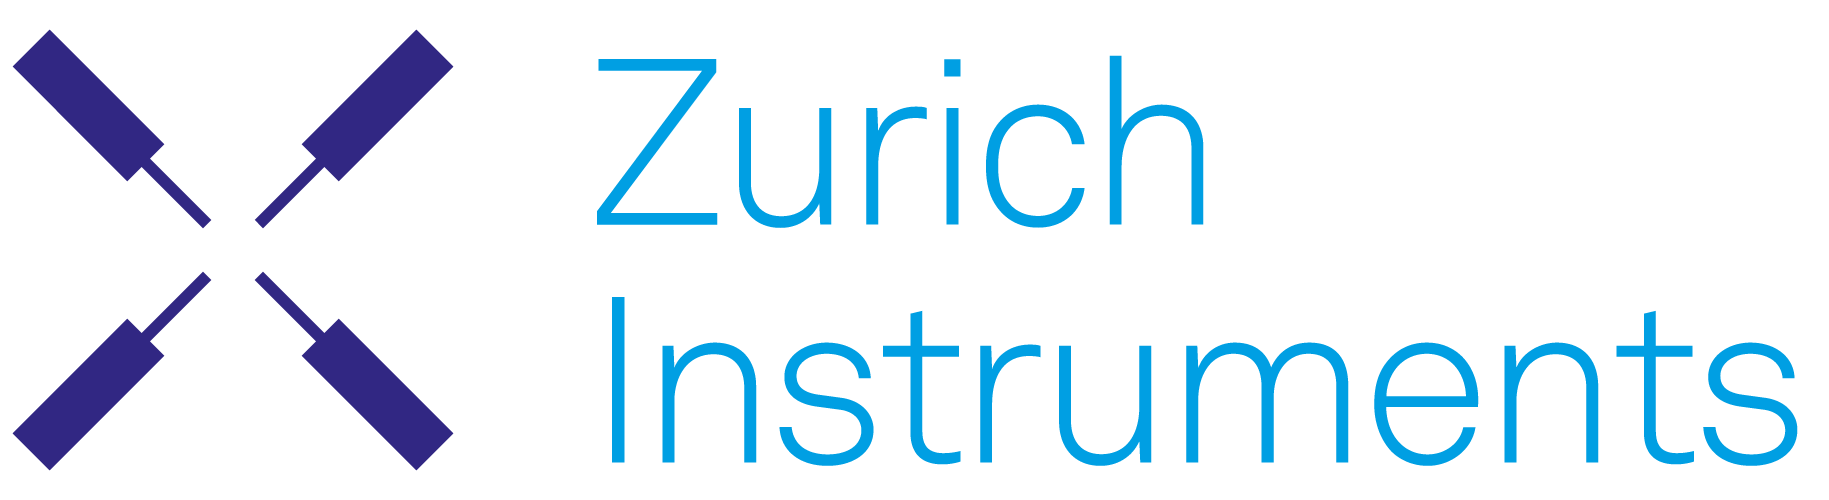 Instrumente Zurich